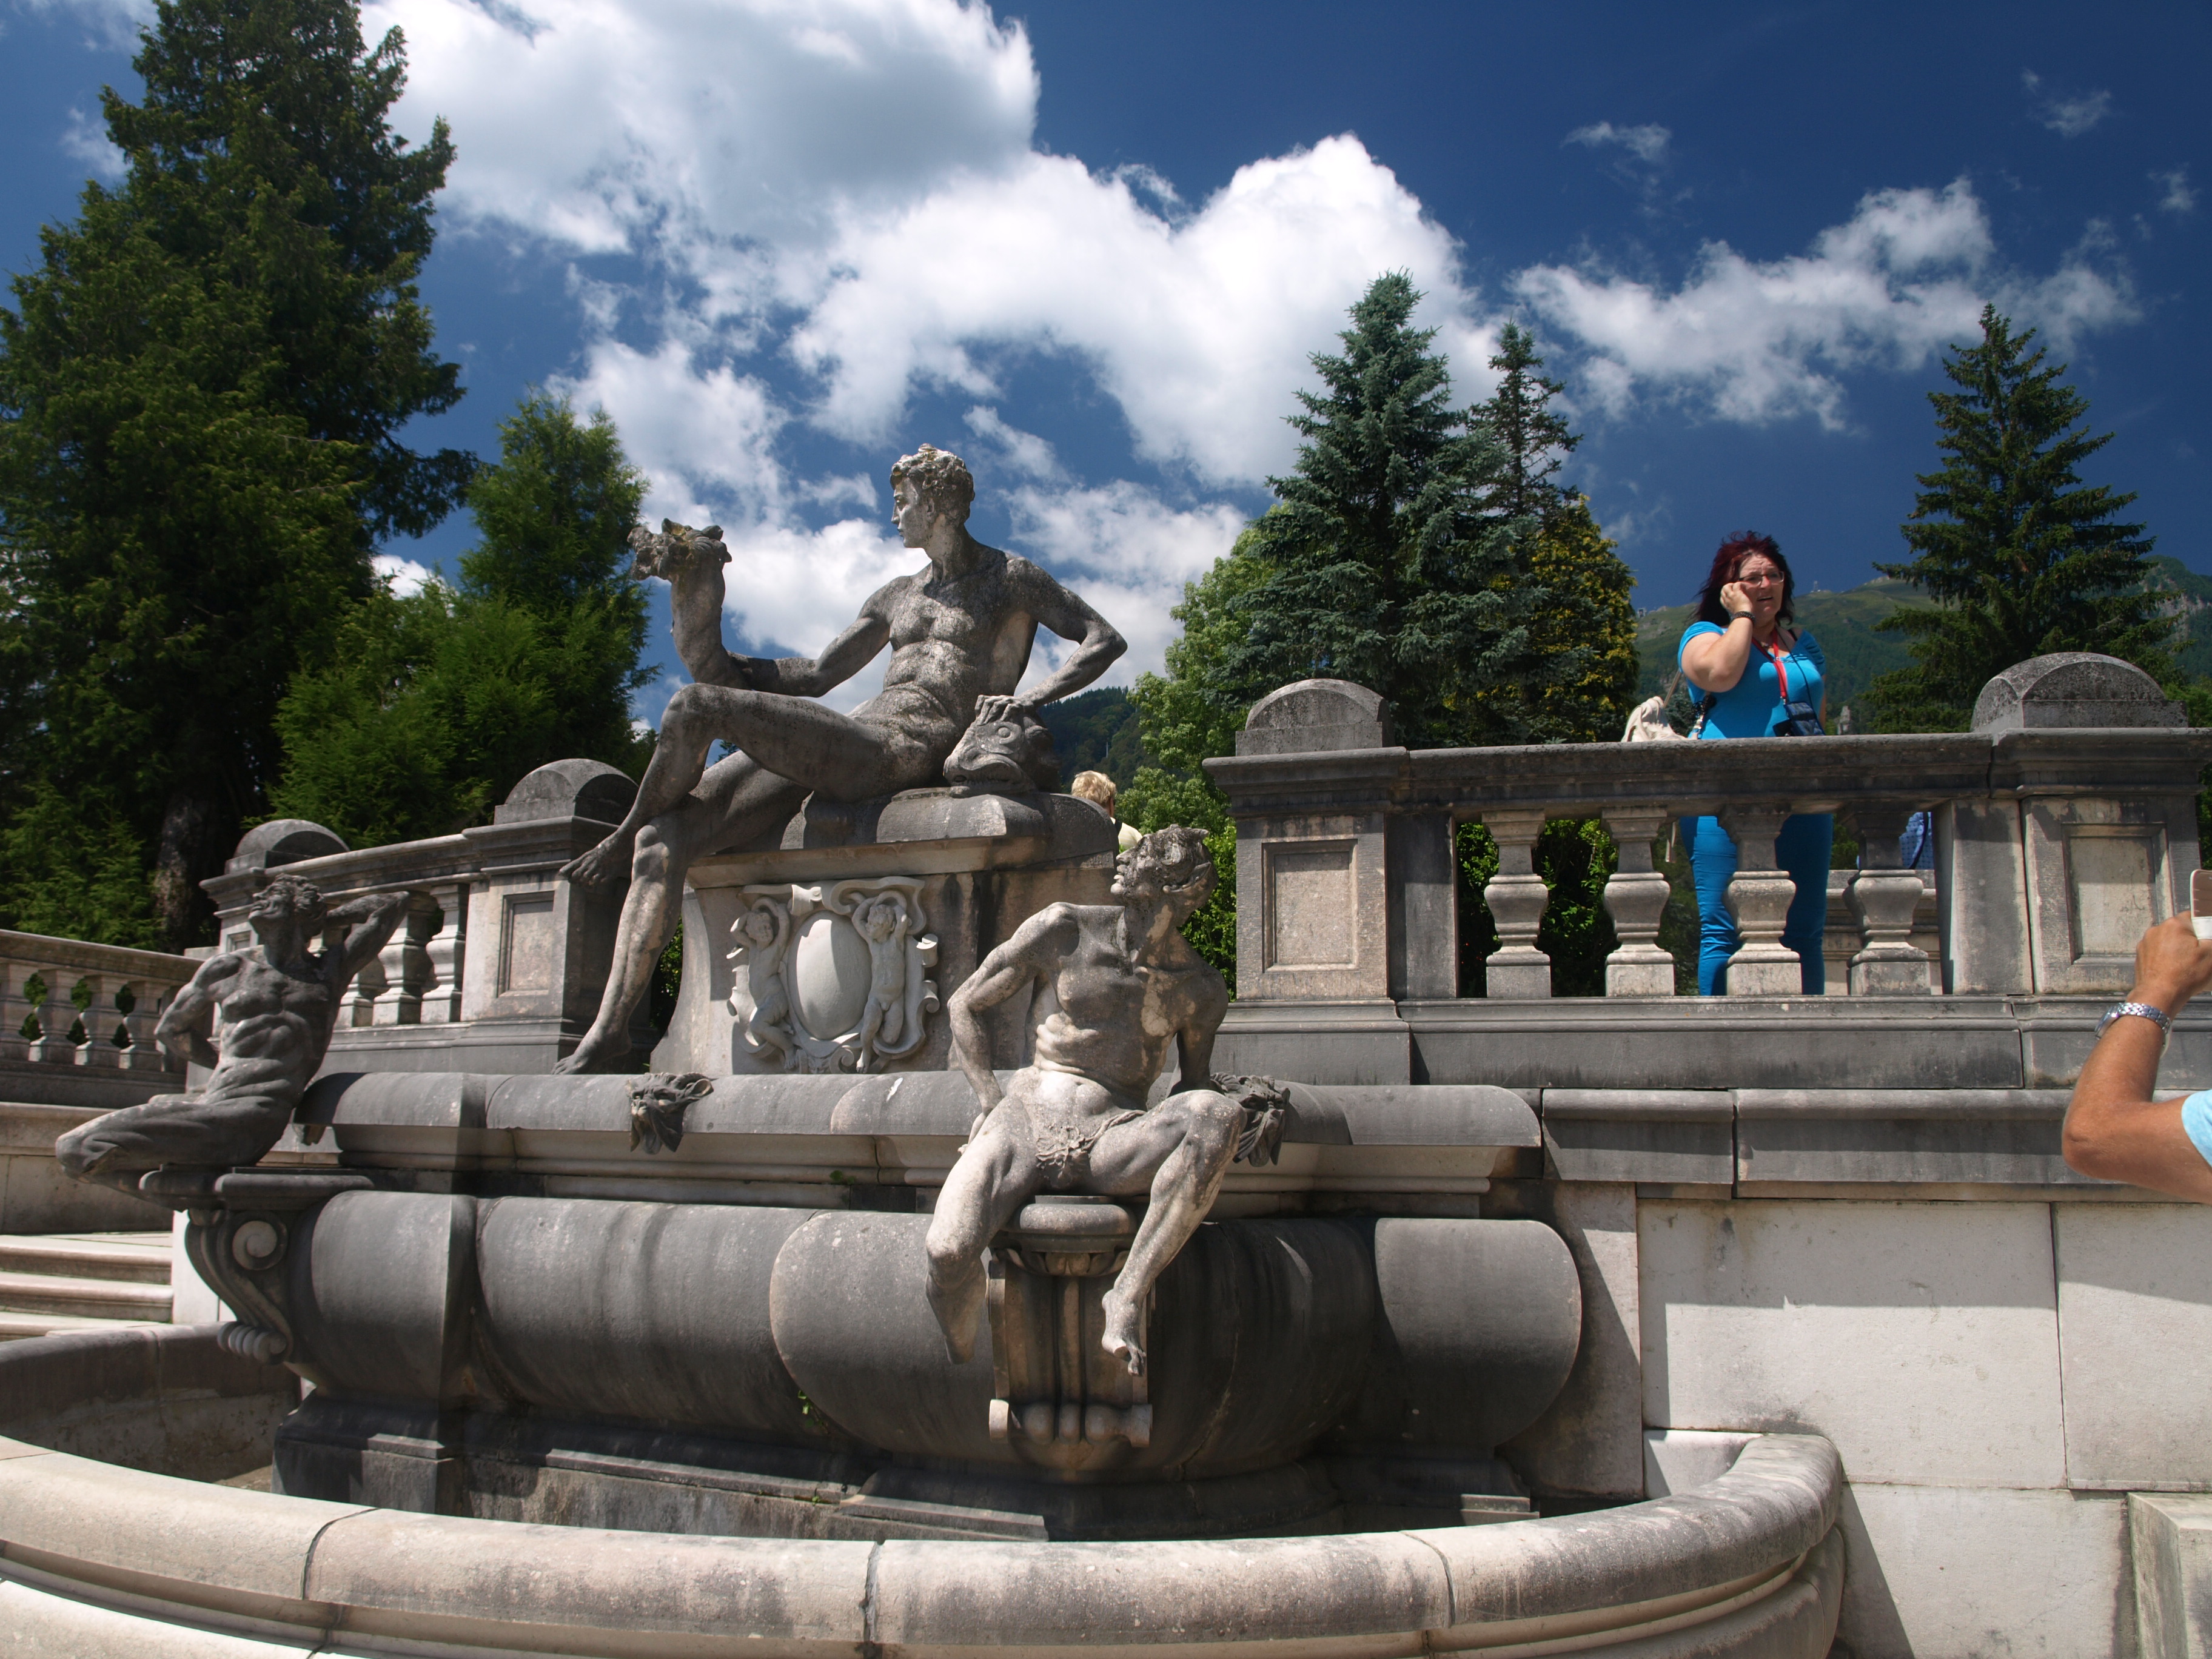 Rumunsko a perly Transylvánie 2022 - Rumunsko - Peles, sochy na fontáně před zámkem